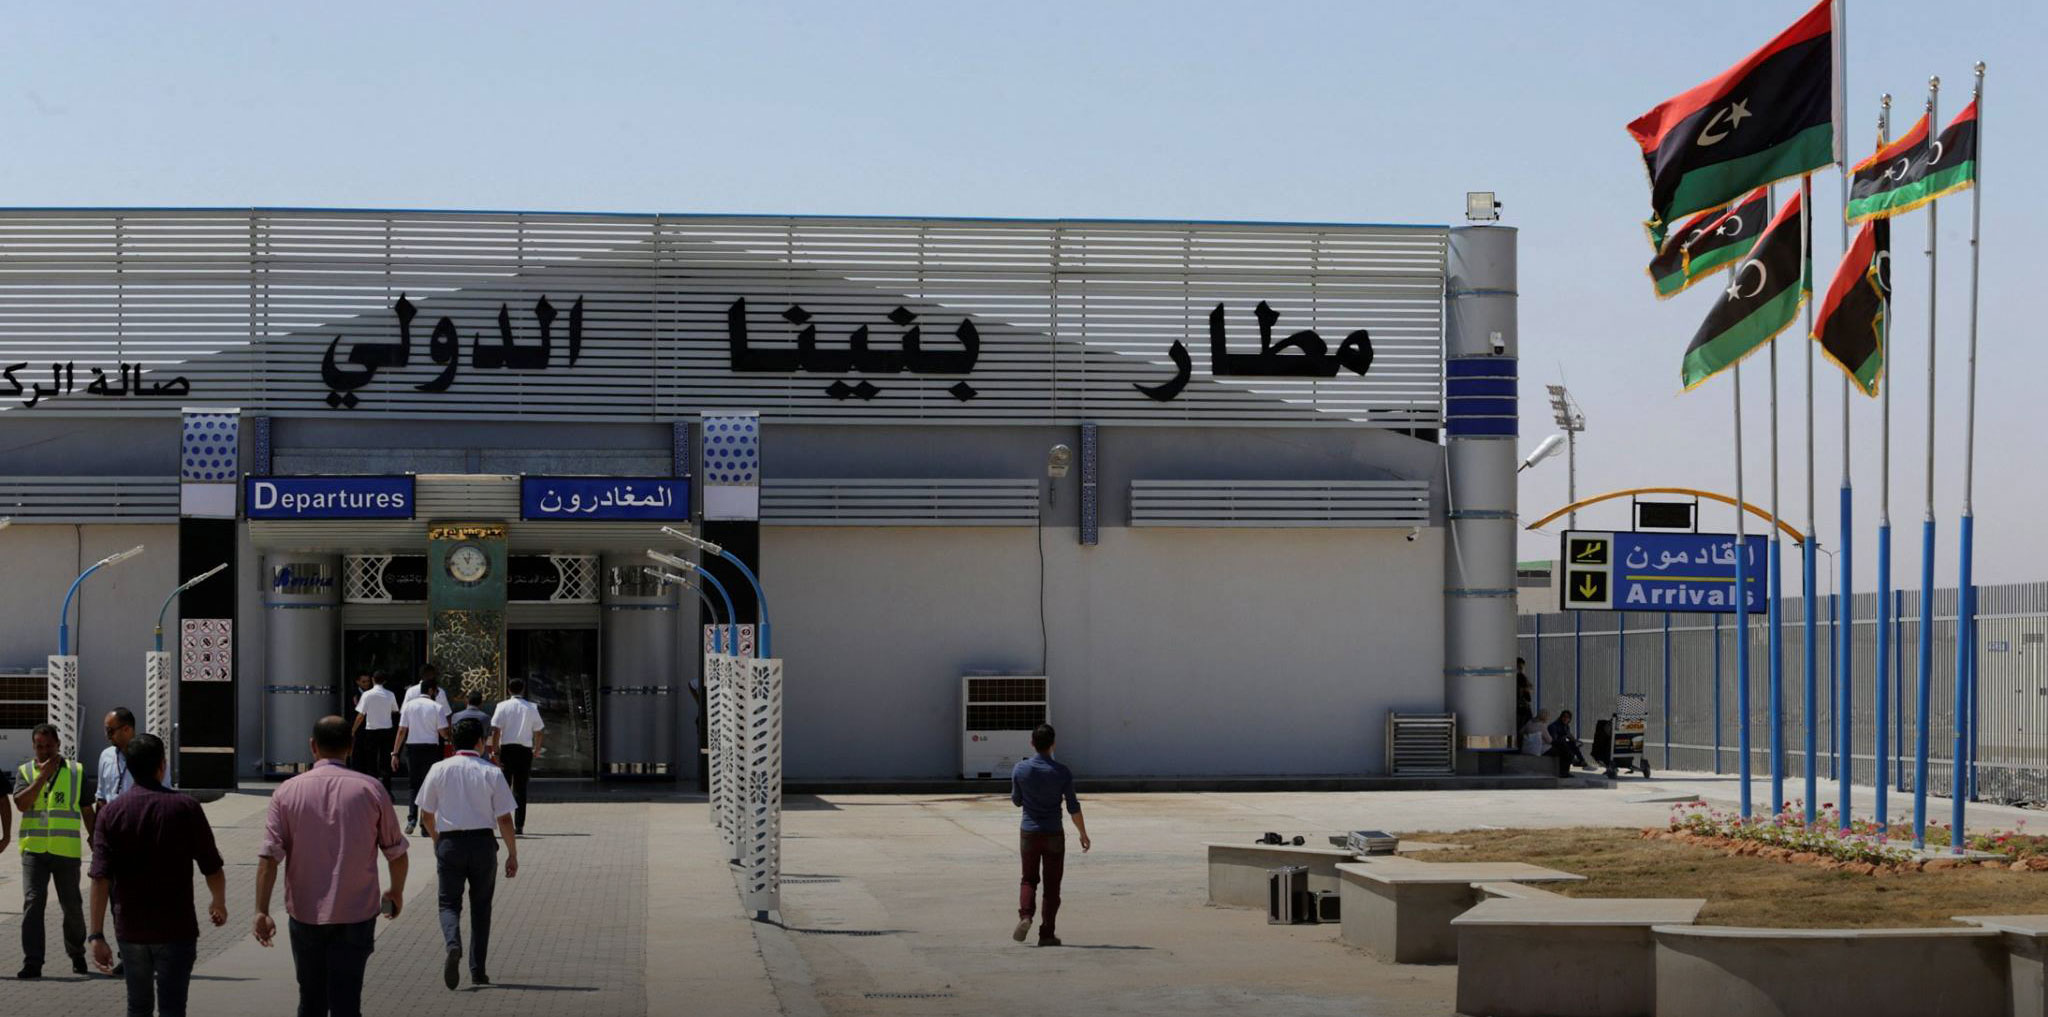 مكونات وتركيبات مدينة بنغازي ترفض قرار حكومة الدبيبة بشأن إقالة مدير مطار بنينا